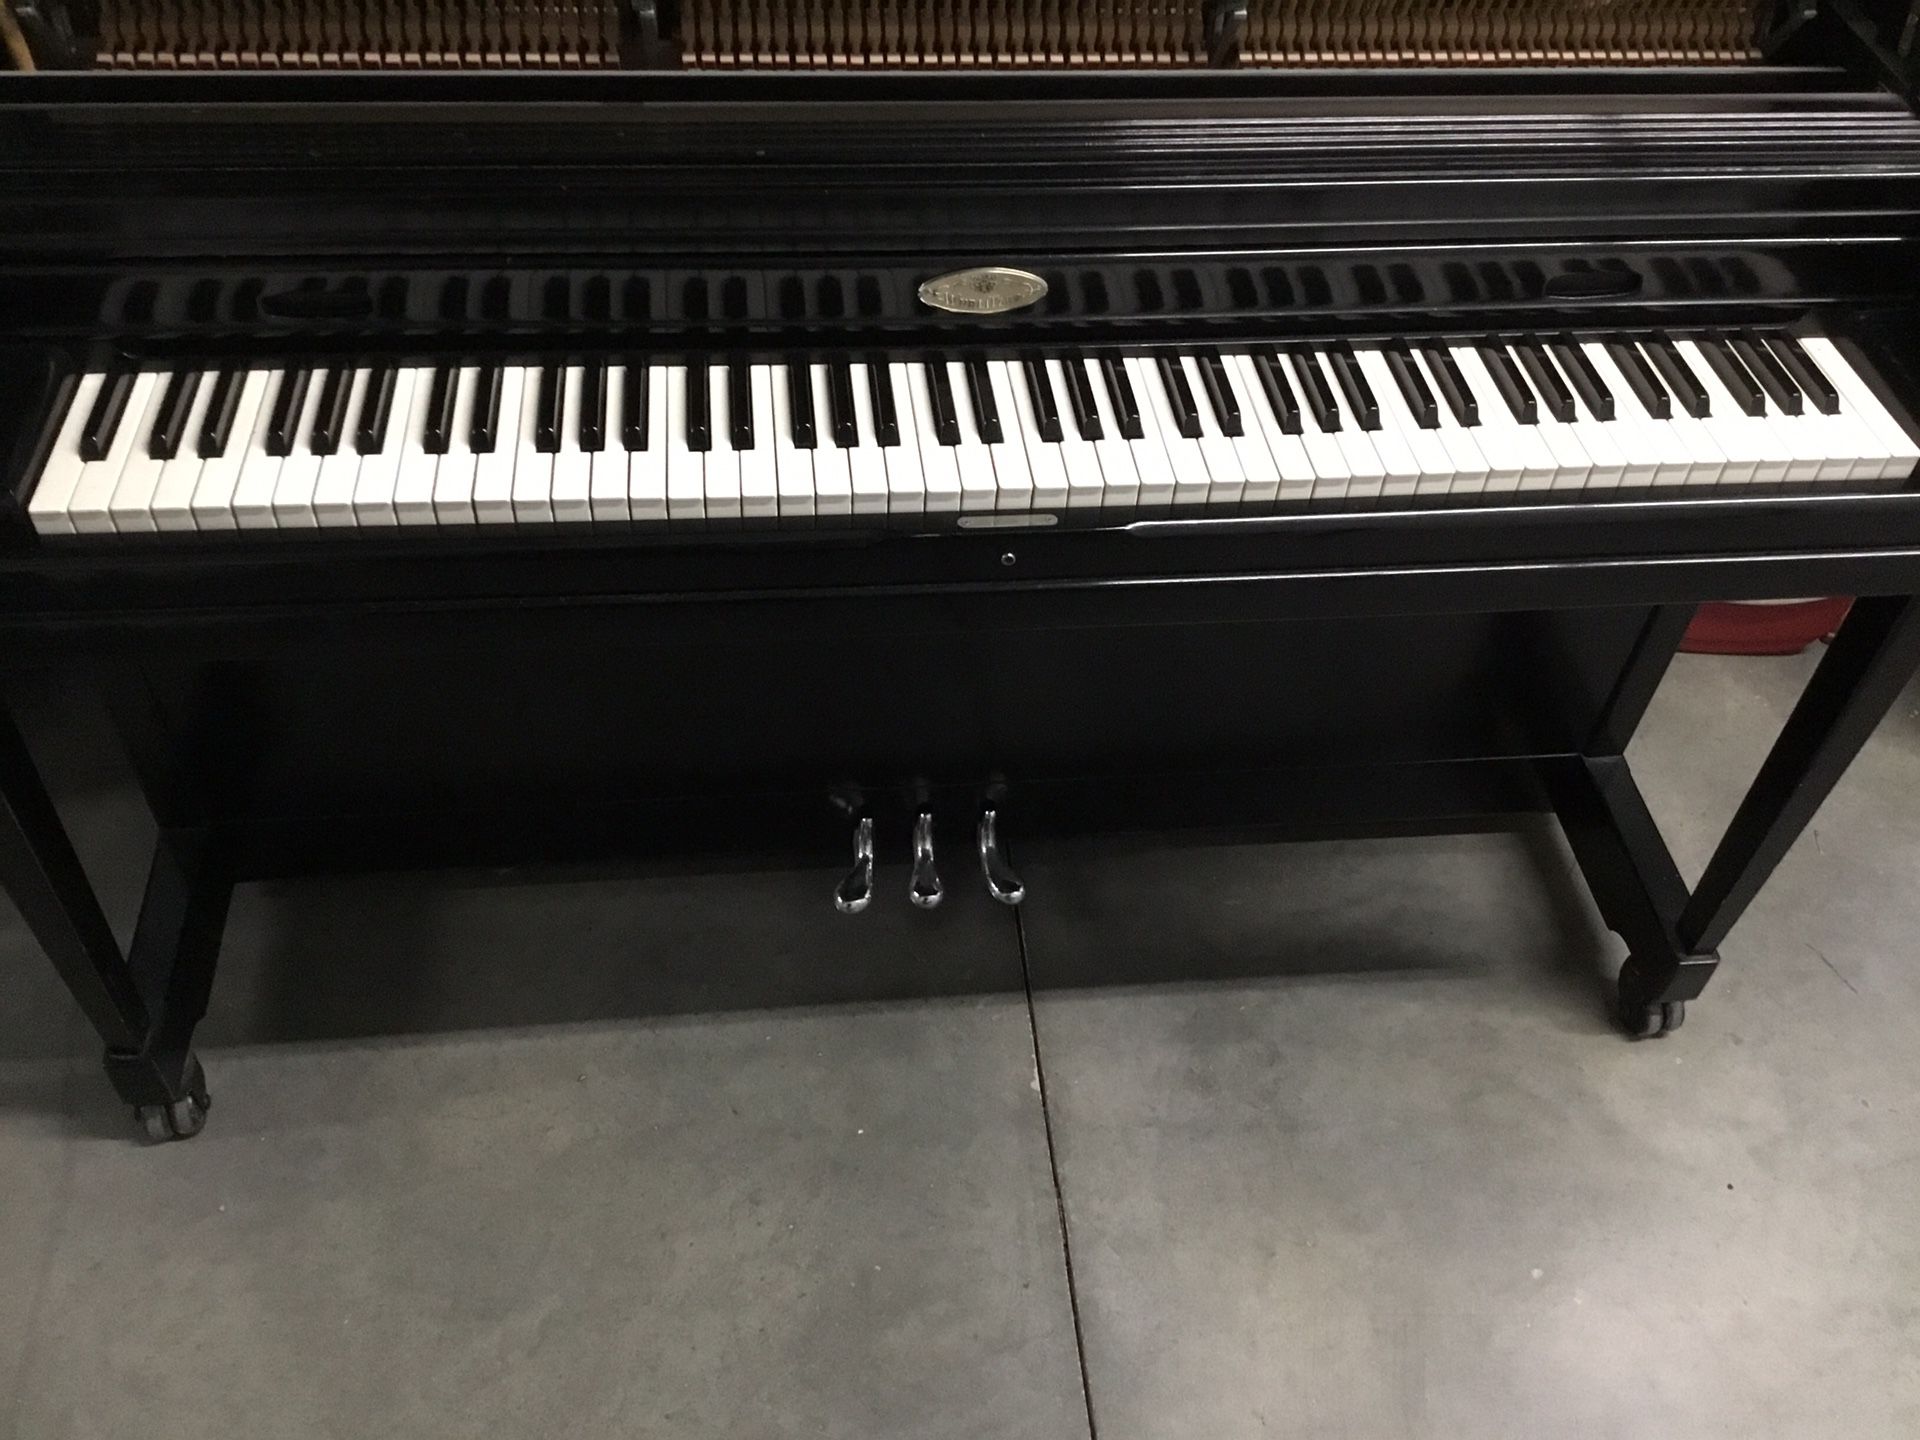 WurliTzer upright piano model 2950